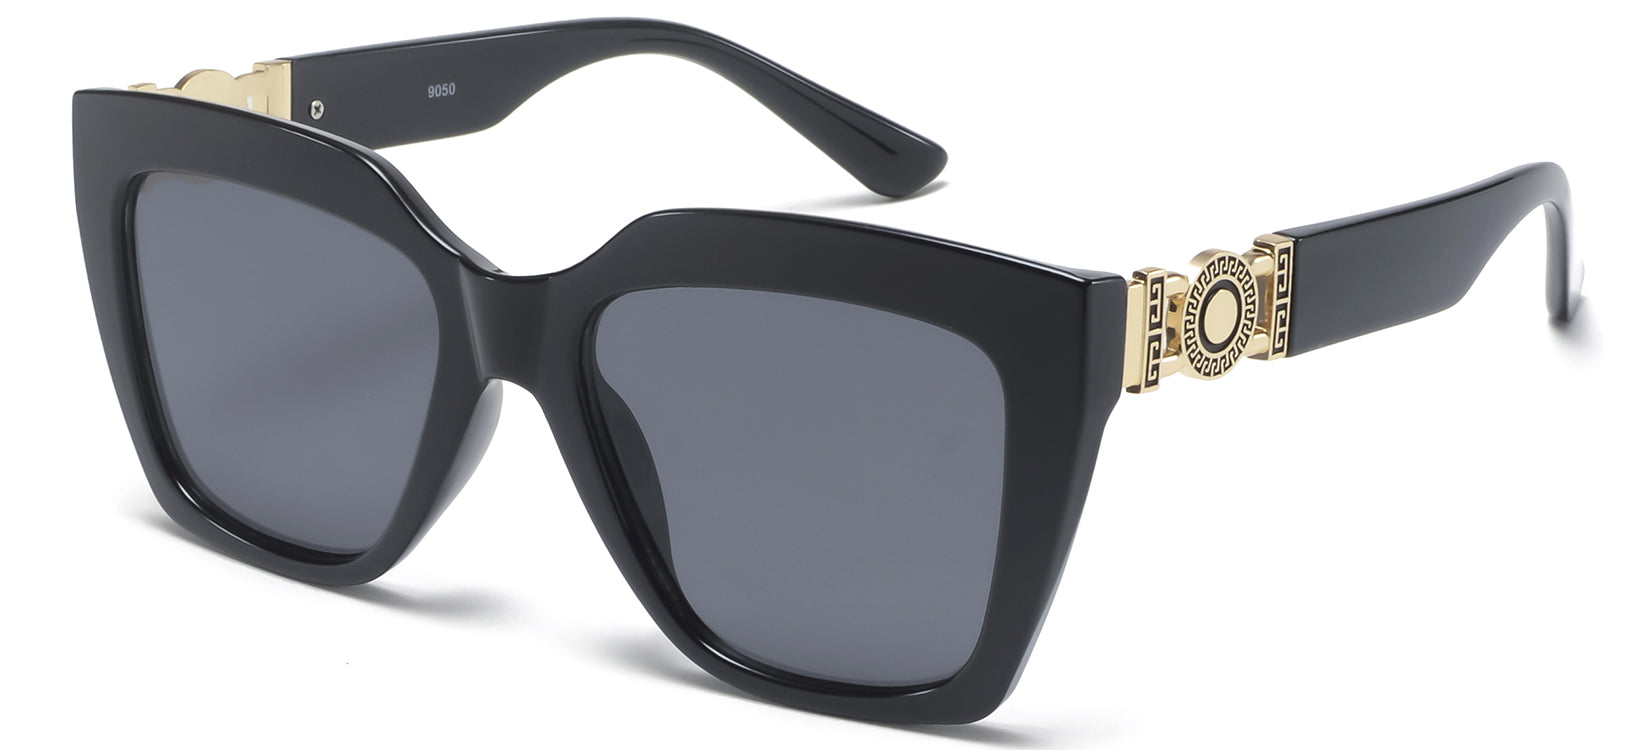 OEM Womens Plastic Sunglasses - GM Sunglasses